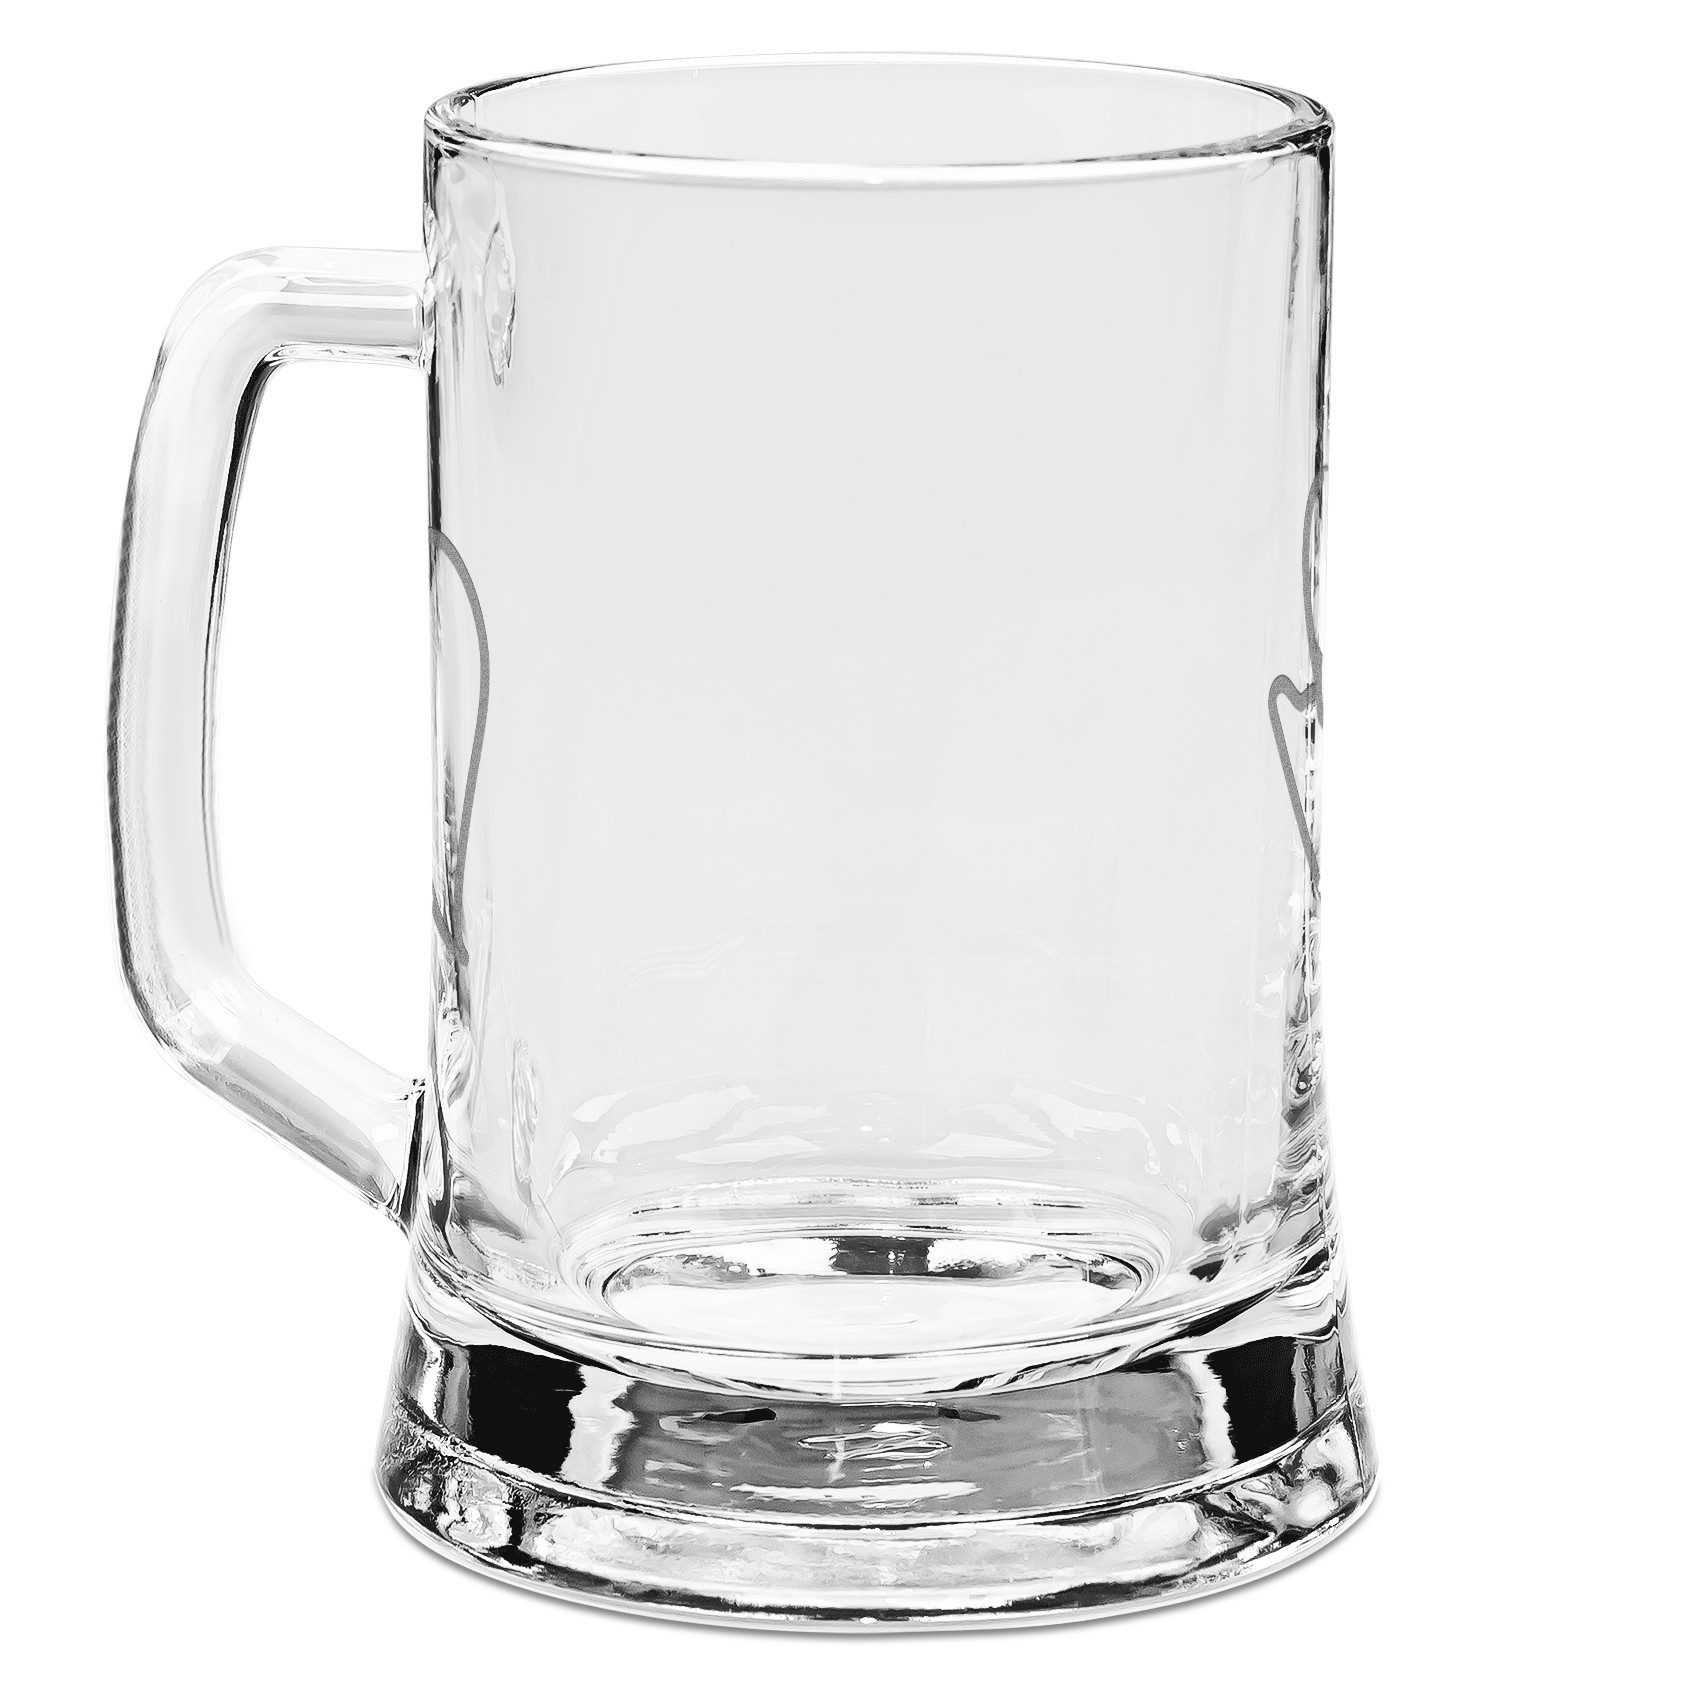 Mr. & Mrs. Panda Bierkrug Einhorn Nacht - Transparent - Geschenk, Freundin, Bierkrug Glas, Real, Premium Glas, Hochwertige Gravur